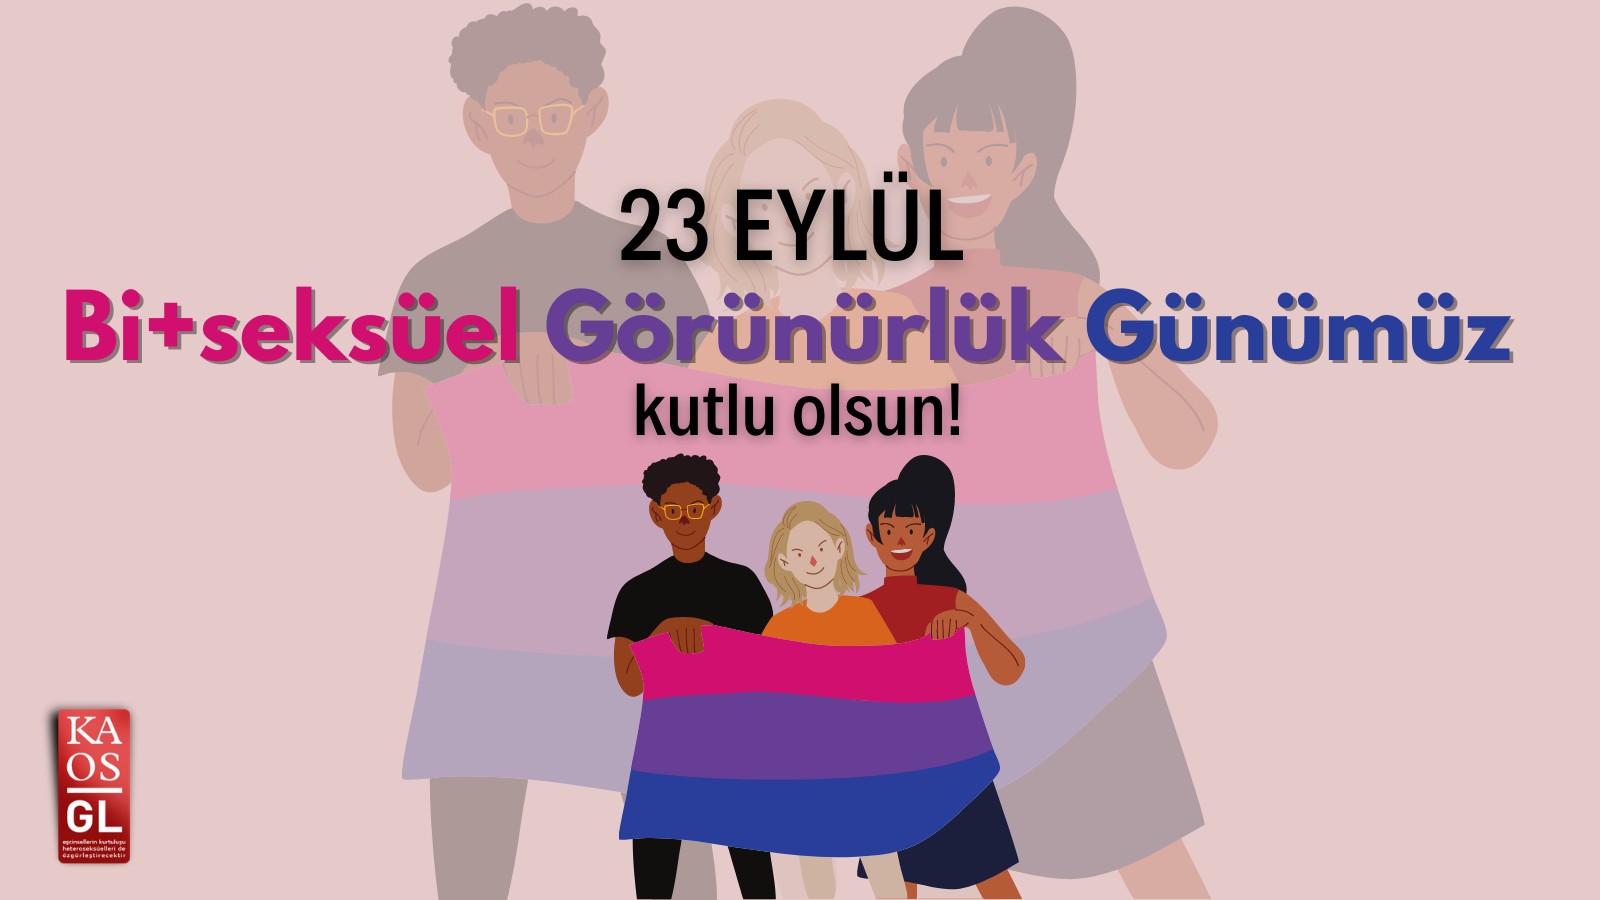 Bi+seksüel Görünürlük Günü kutlu olsun! Kaos GL - LGBTİ+ Haber Portalı